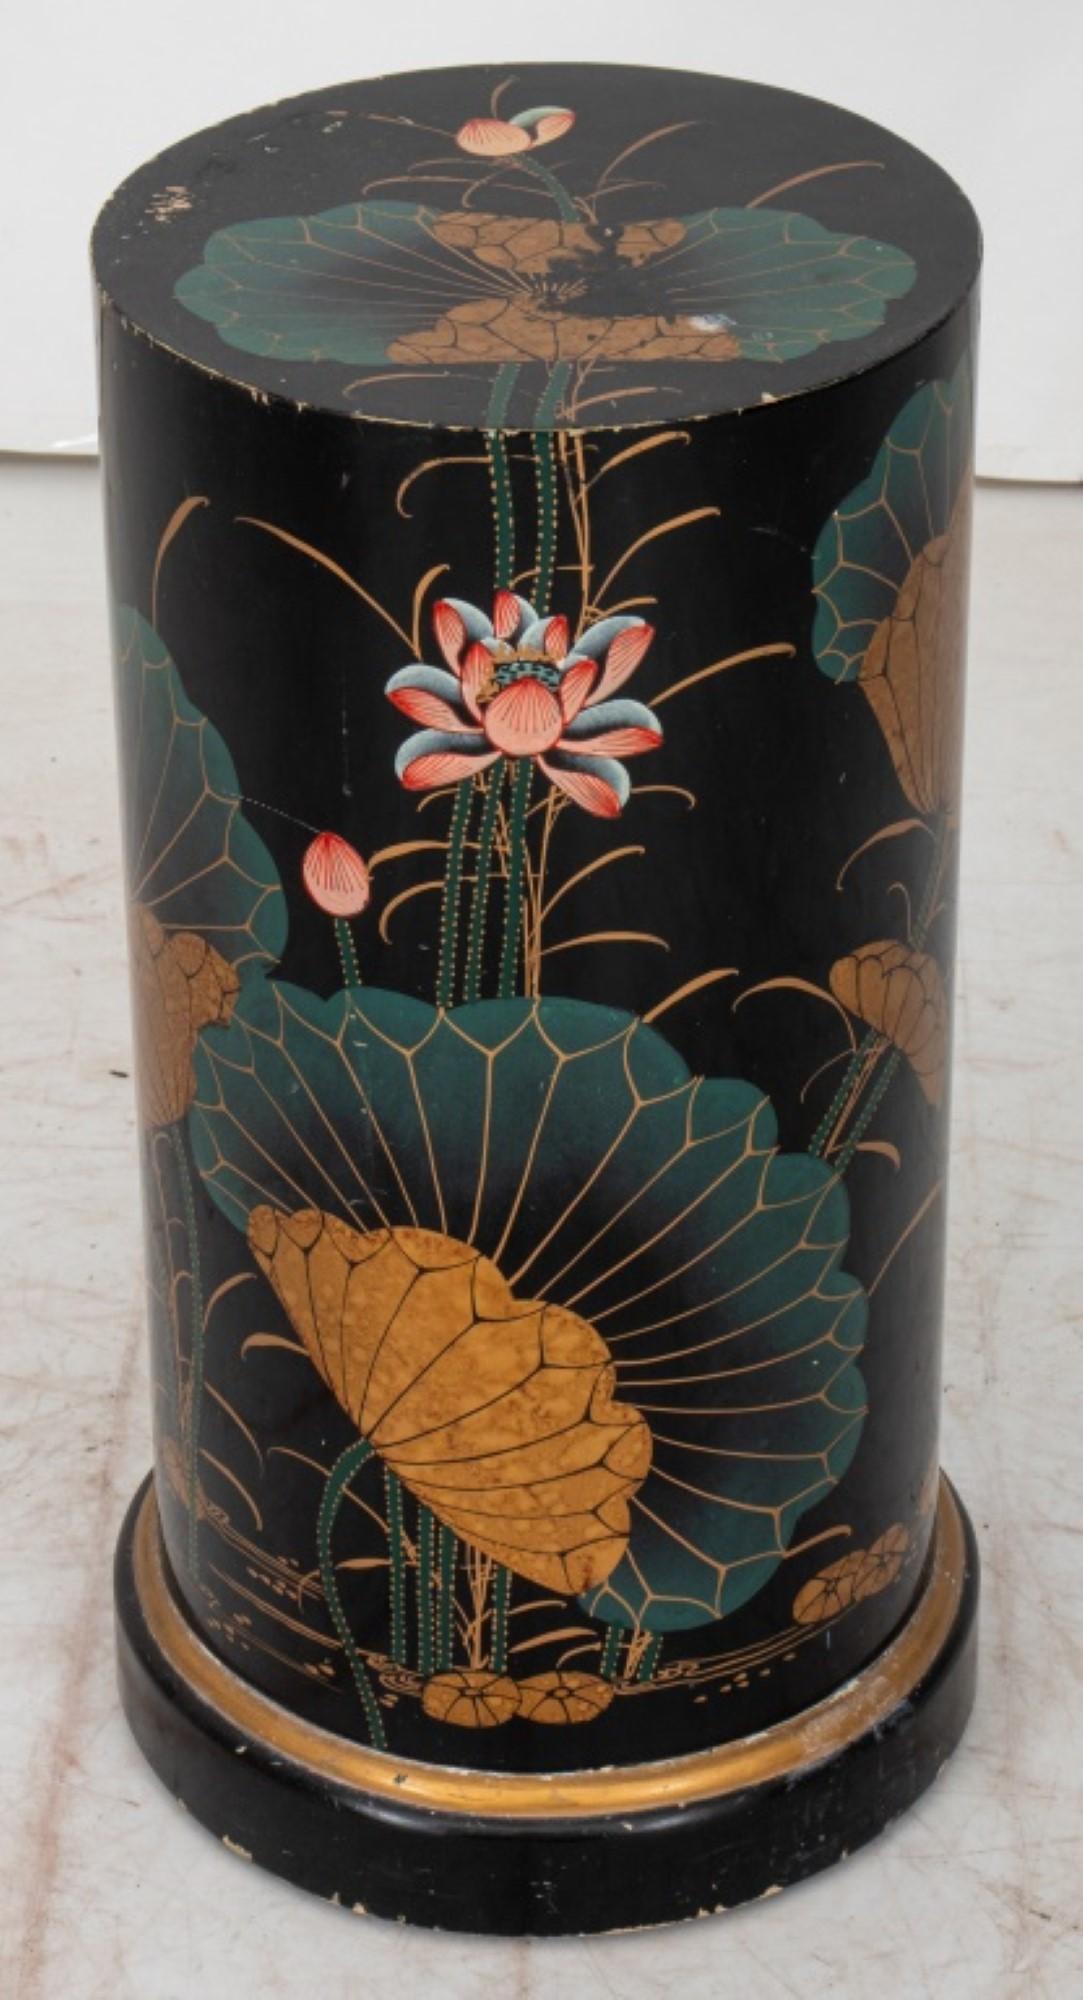 Säulensockel aus lackiertem Chinoiserie-Holz mit Vogel- und Seerosenmotiv.

Händler: S138XX